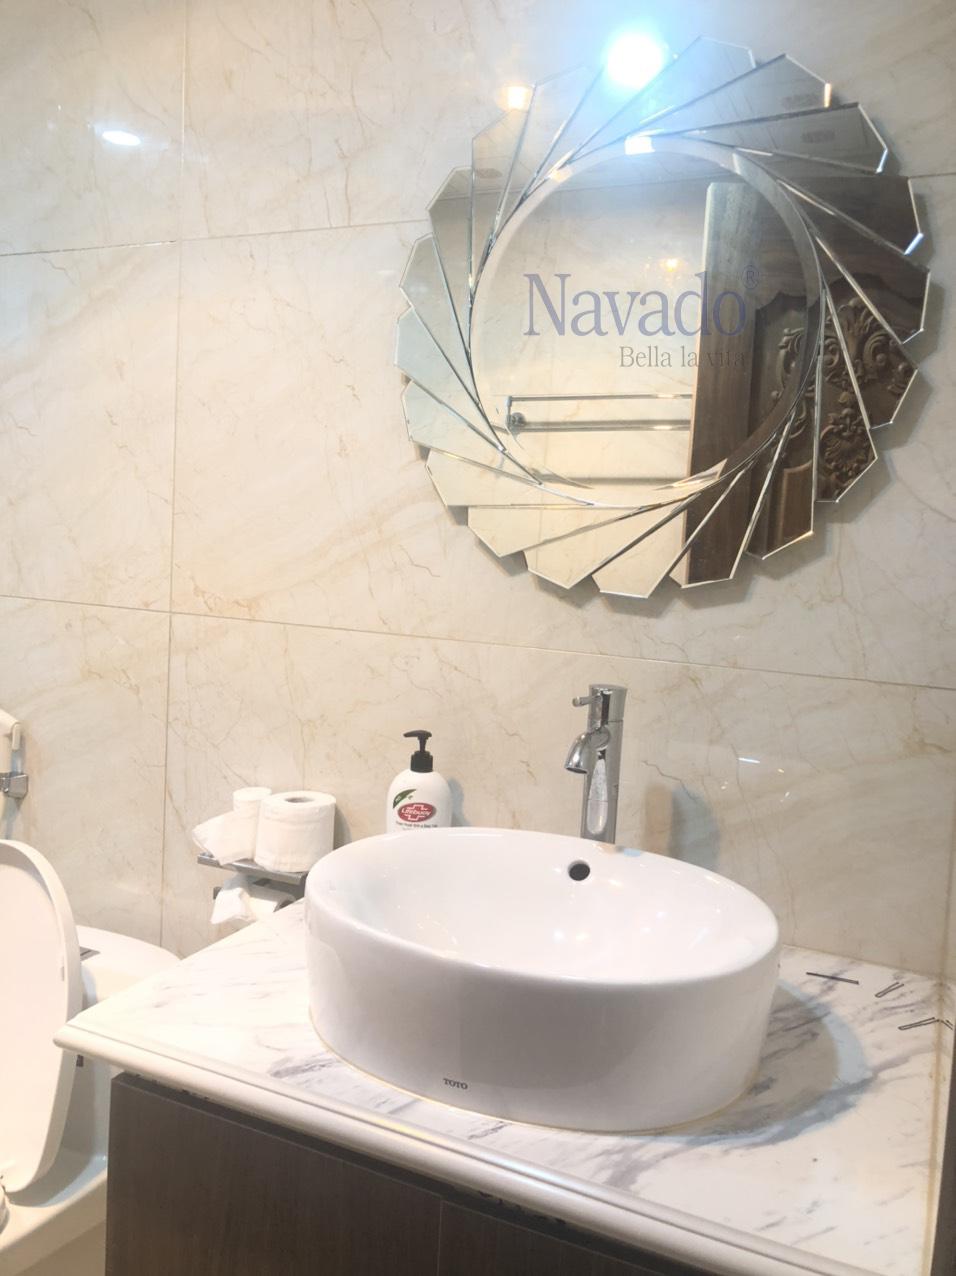 Gương phòng tắm nghệ thuật Navado: Nếu bạn đang tìm kiếm một sản phẩm gương phòng tắm độc đáo và nghệ thuật, Navado sẽ là lựa chọn tốt nhất cho bạn. Với thiết kế đẹp mắt kết hợp với chất liệu đẳng cấp, Navado không chỉ là một sản phẩm trang trí tuyệt vời, mà còn mang lại sự tiện nghi cho phòng tắm của bạn. Hãy trải nghiệm sản phẩm này và đưa điểm nhấn nghệ thuật cho không gian phòng tắm của bạn!